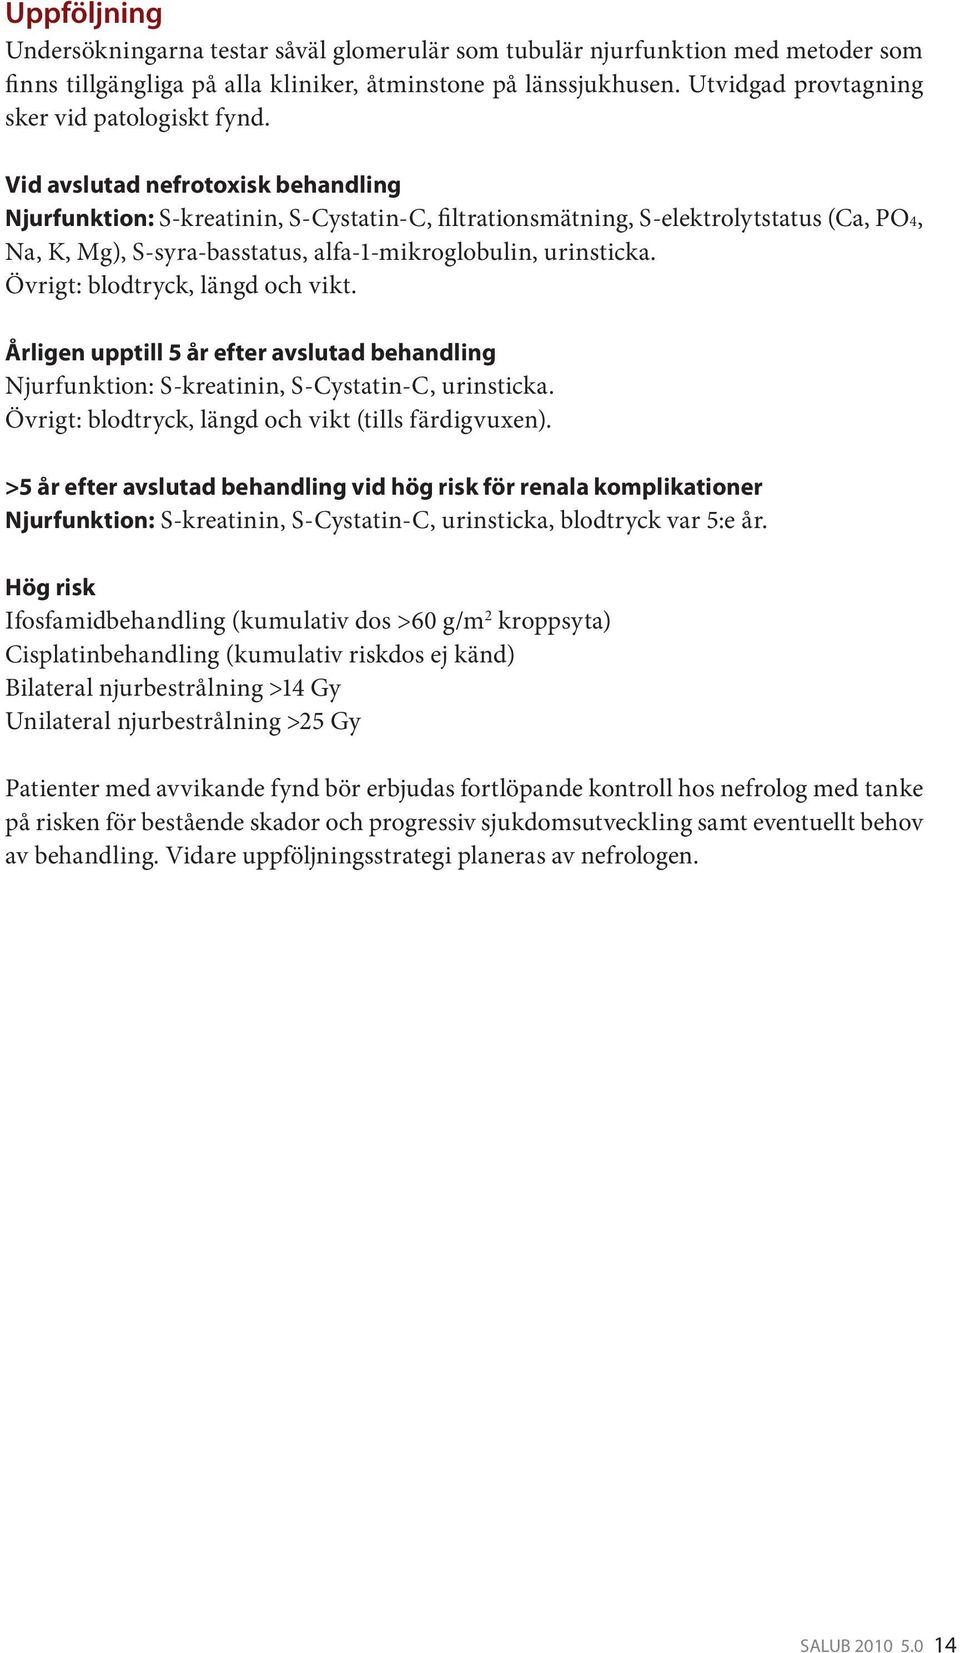 Vid avslutad nefrotoxisk behandling Njurfunktion: S-kreatinin, S-Cystatin-C, filtrationsmätning, S-elektrolytstatus (Ca, PO4, Na, K, Mg), S-syra-basstatus, alfa-1-mikroglobulin, urinsticka.